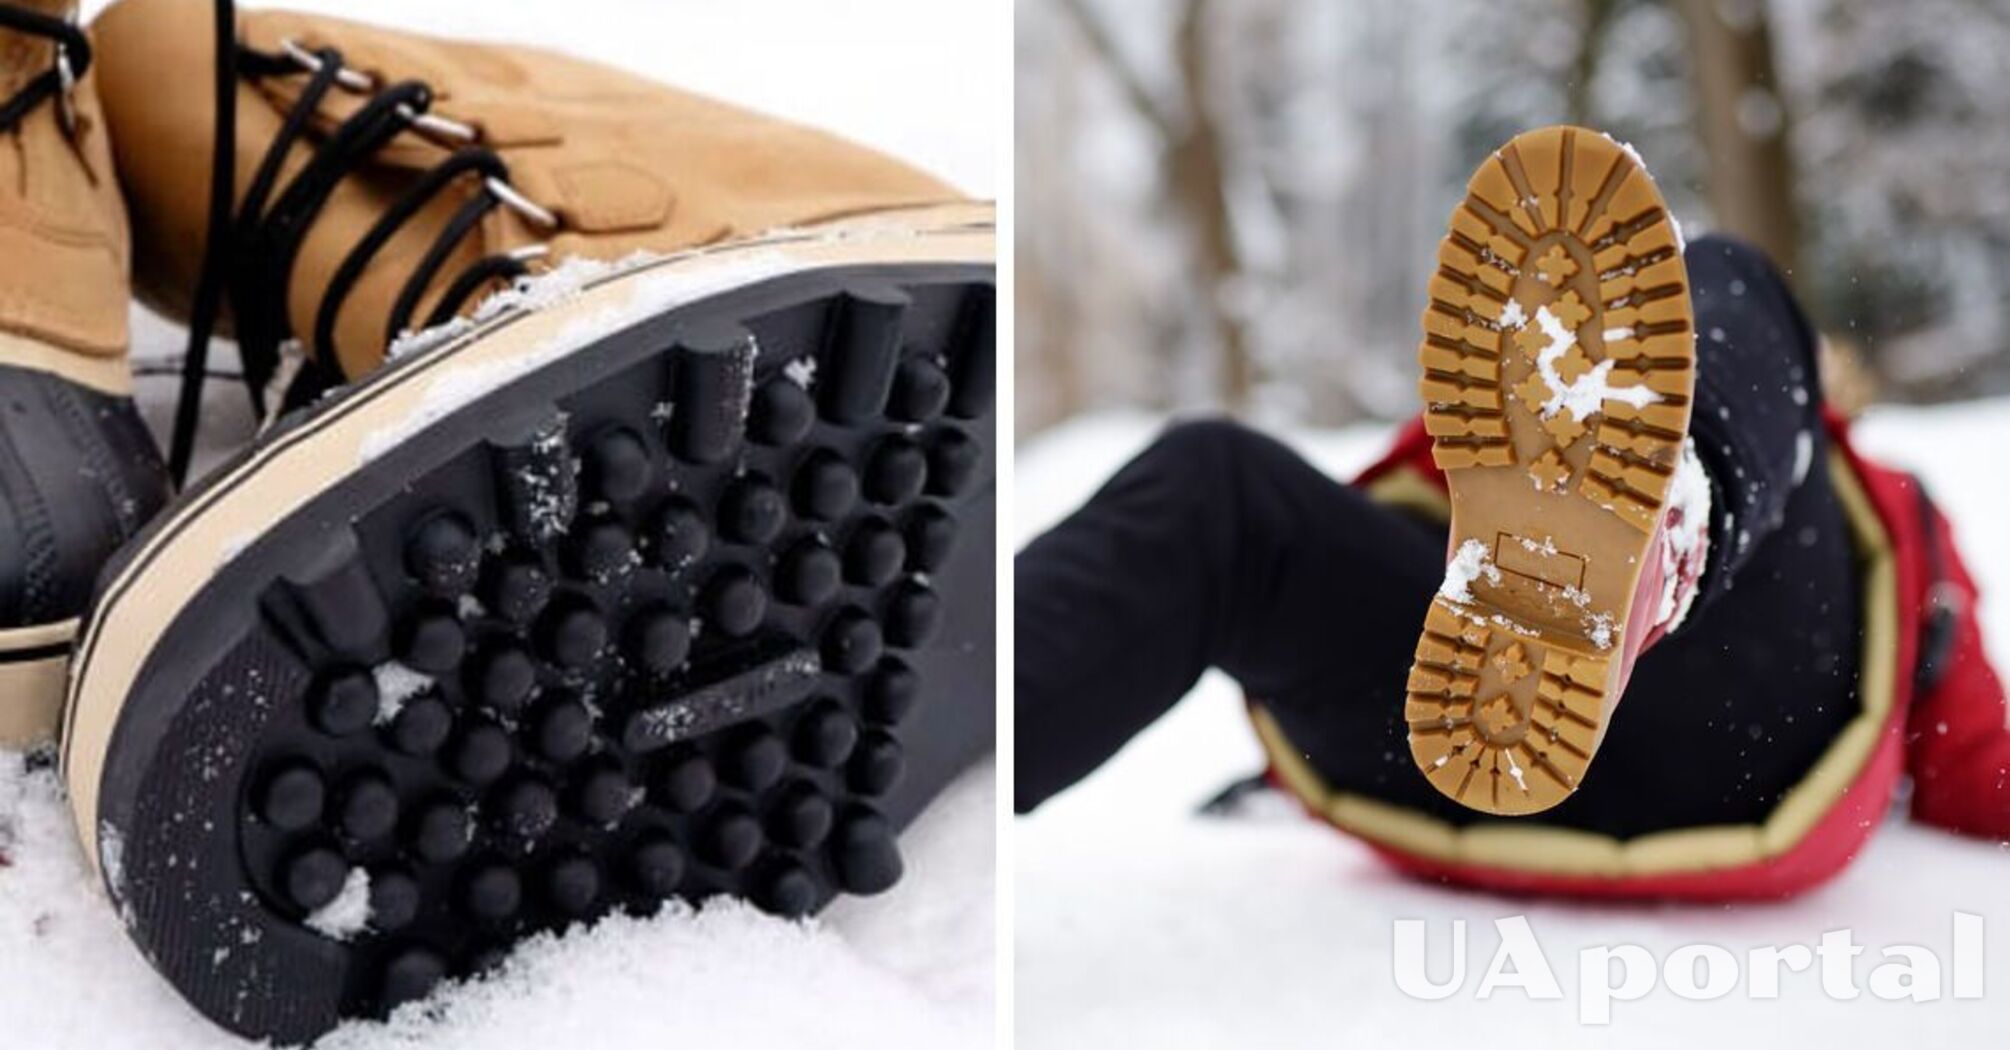 Как не падать зимой на льду: 7 бюджетных способов предотвратить скольжение обуви